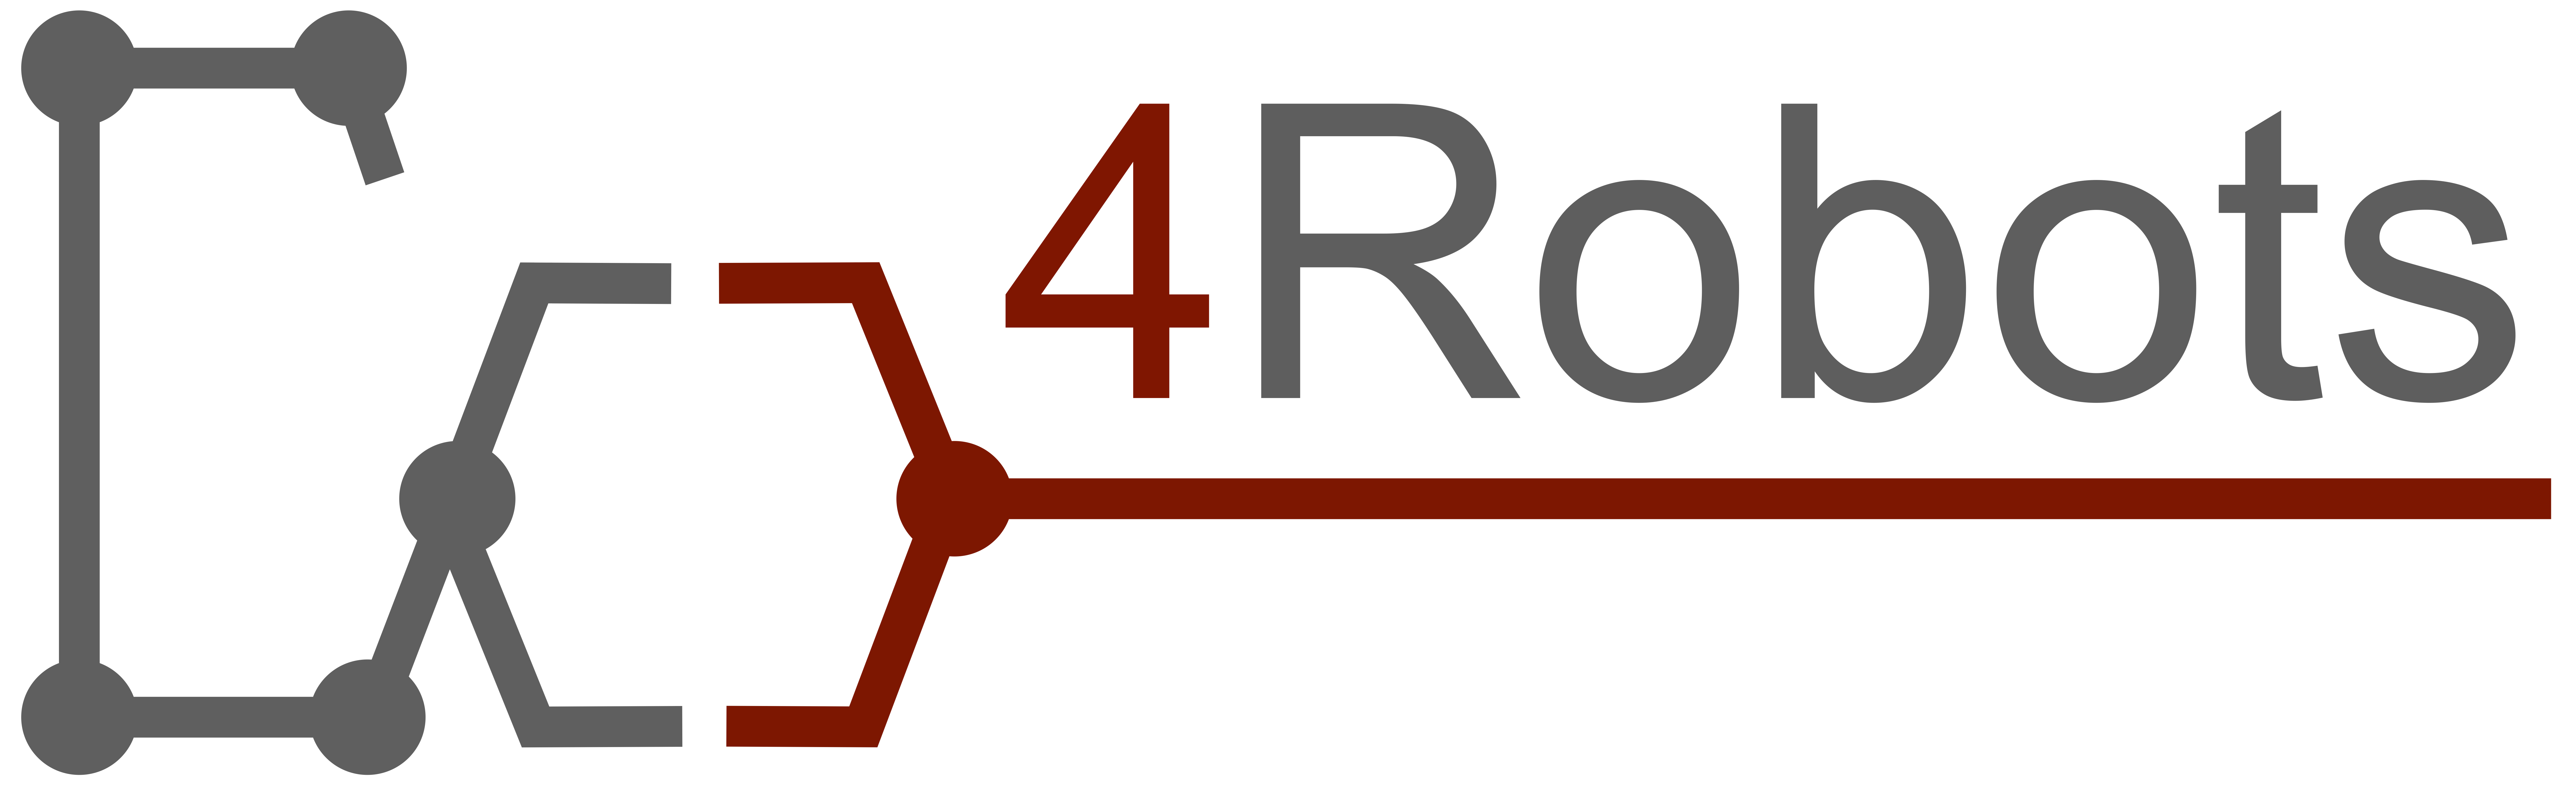 Co4Robots logo